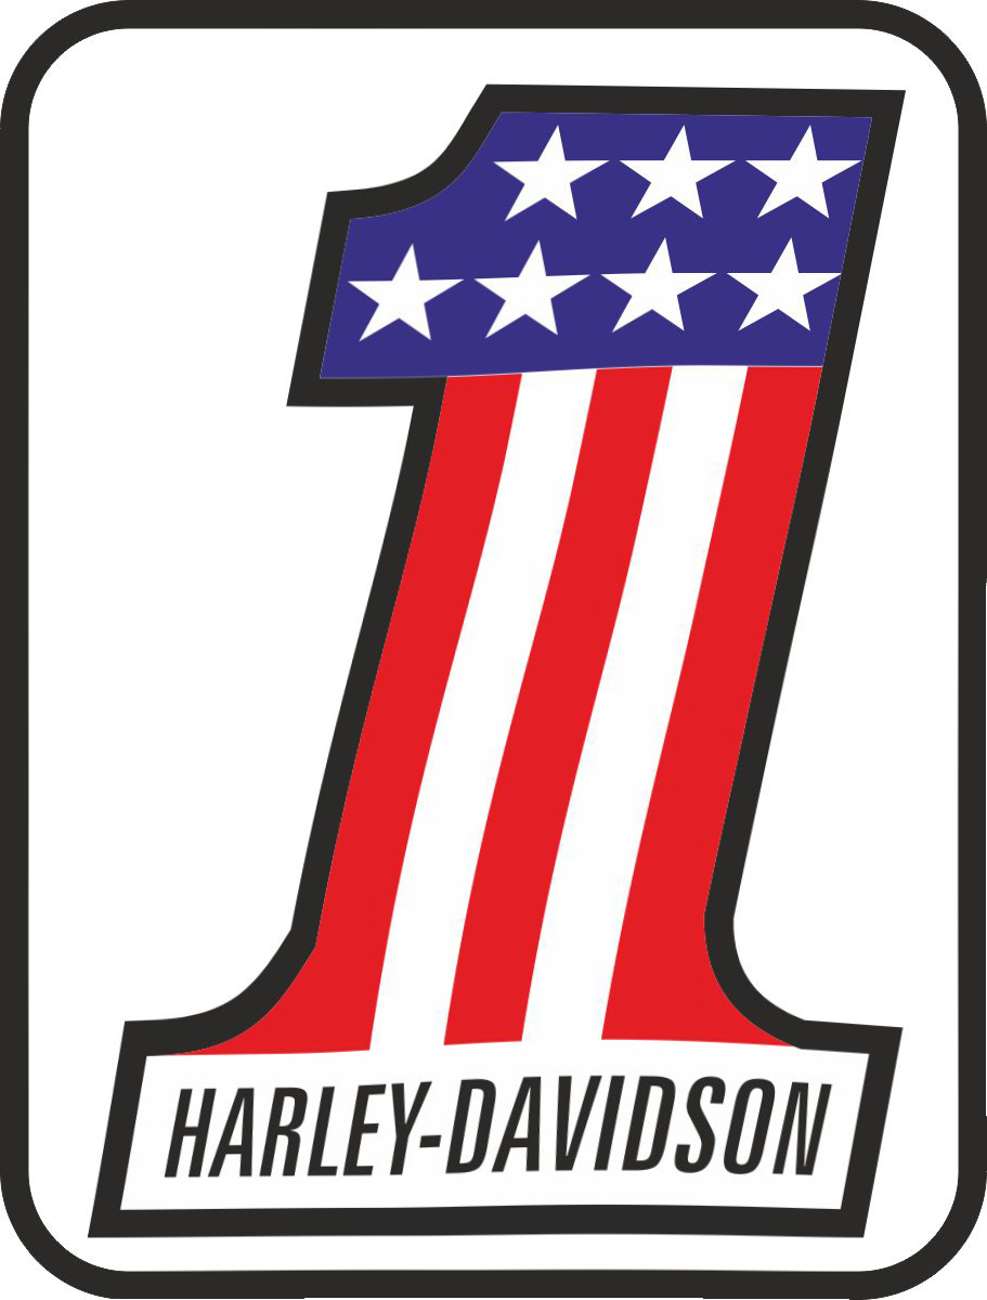 HARLEY DAVIDSON 12 stickers set - MXG.ONE - Best moto decals